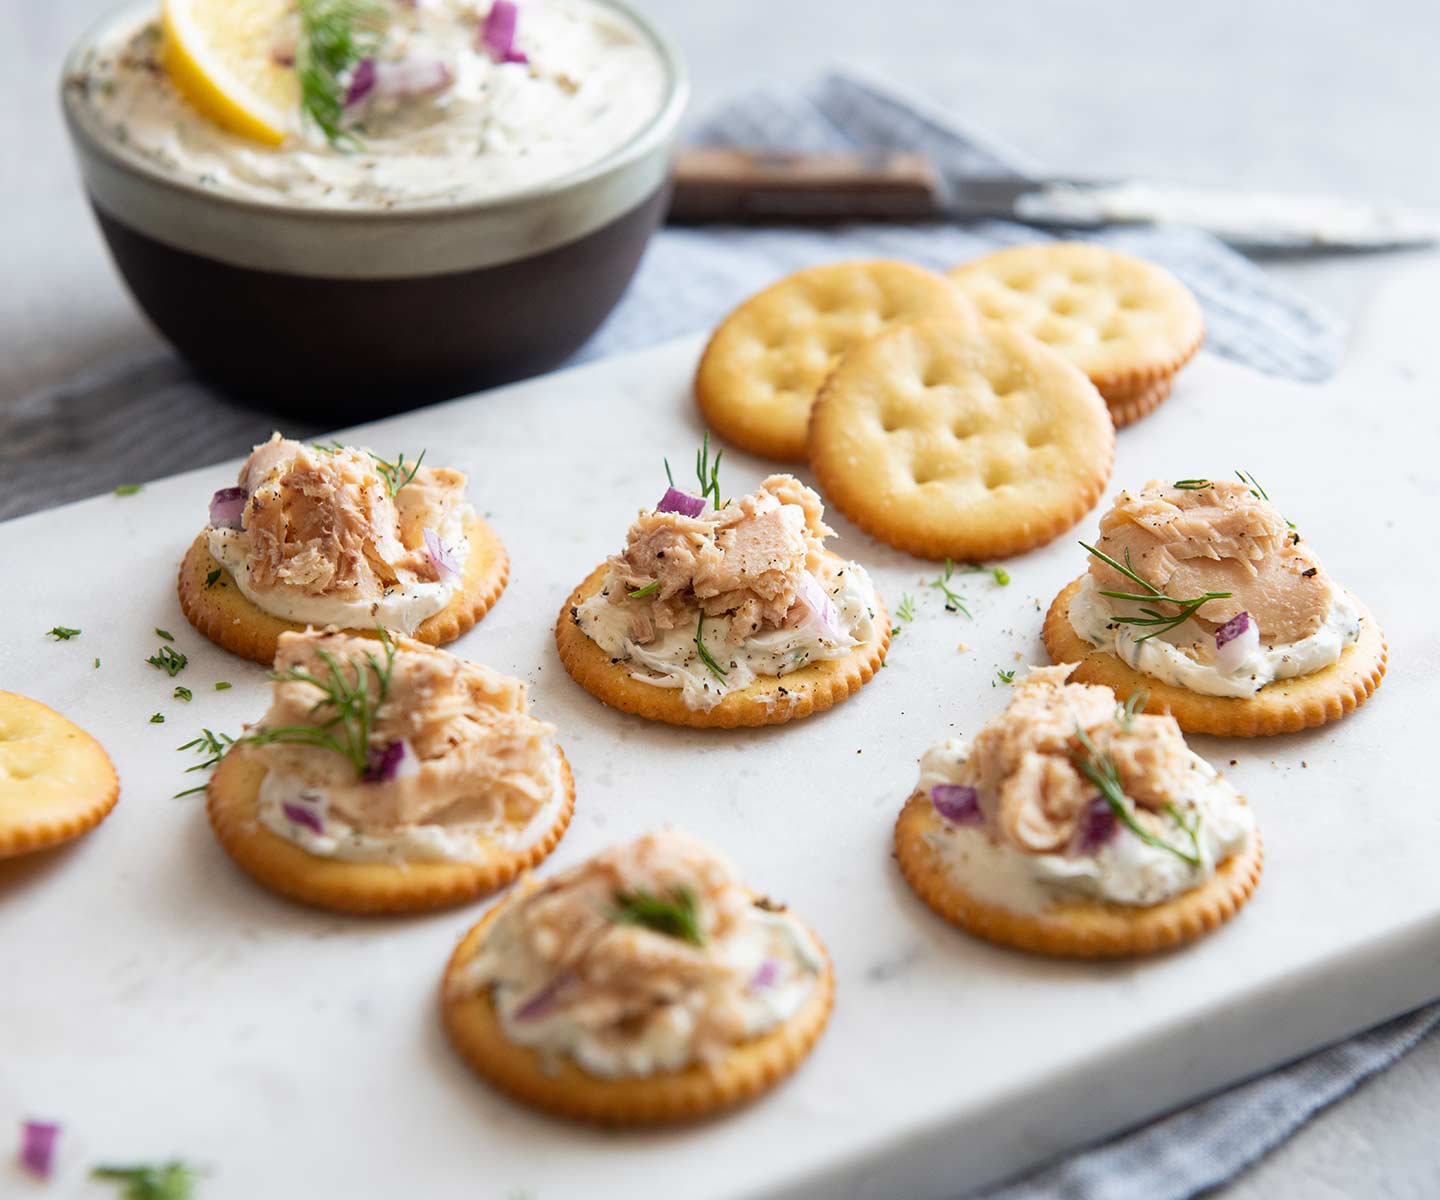 https://chickenofthesea.com/wp-content/uploads/2022/04/Smoked-Salmon-and-Cream-Cheese-Crackers.jpg